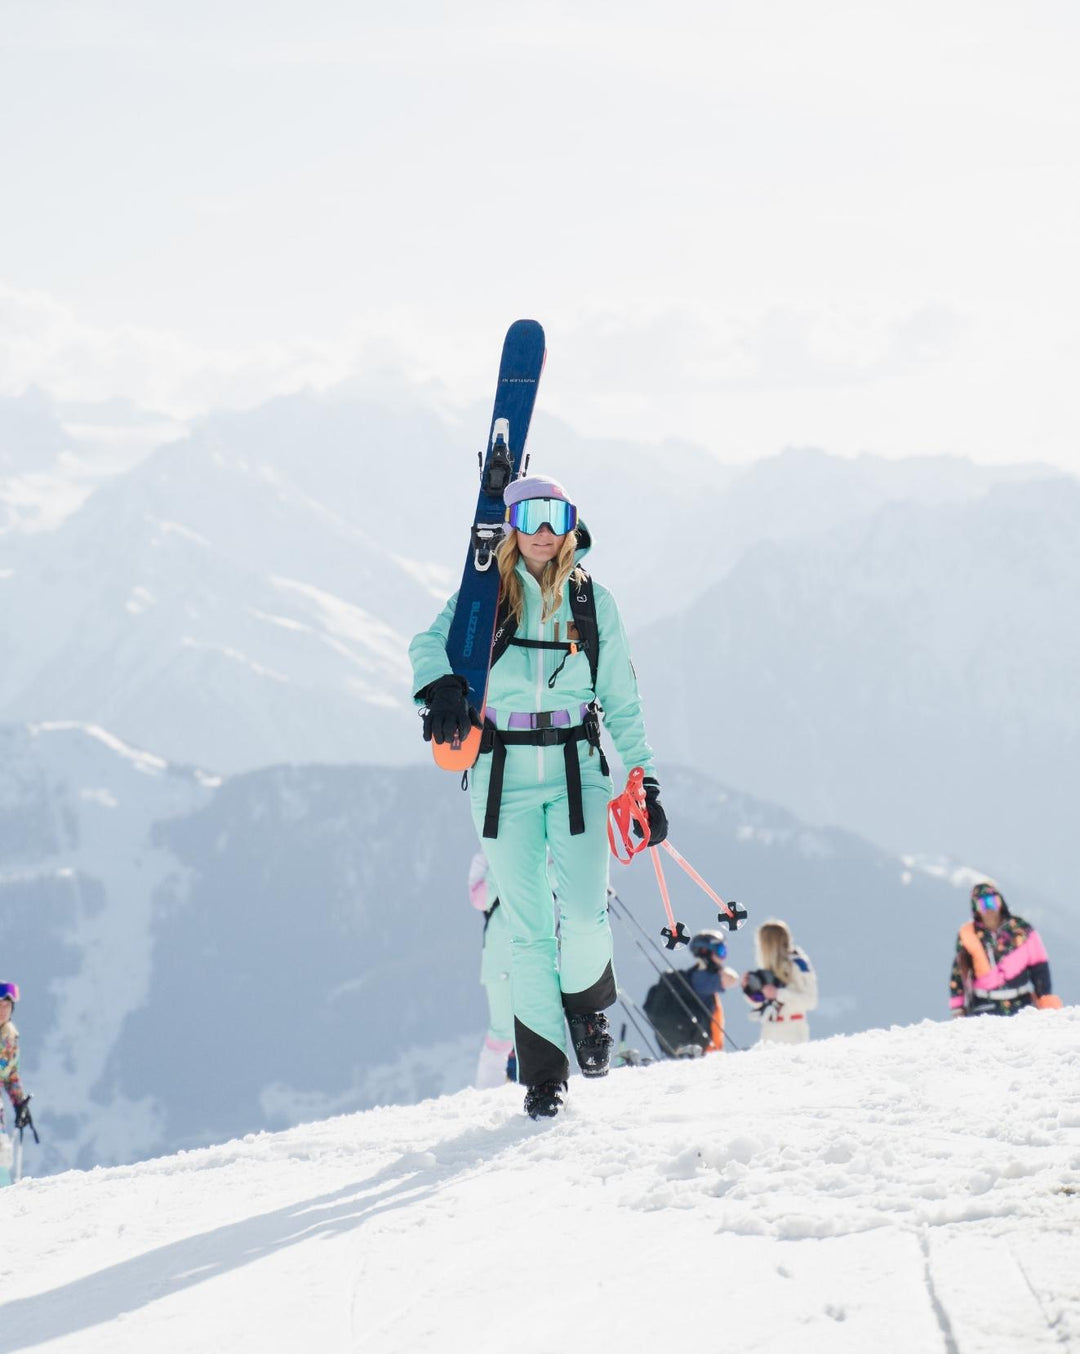 Chic Ski Suit Mint - Women's